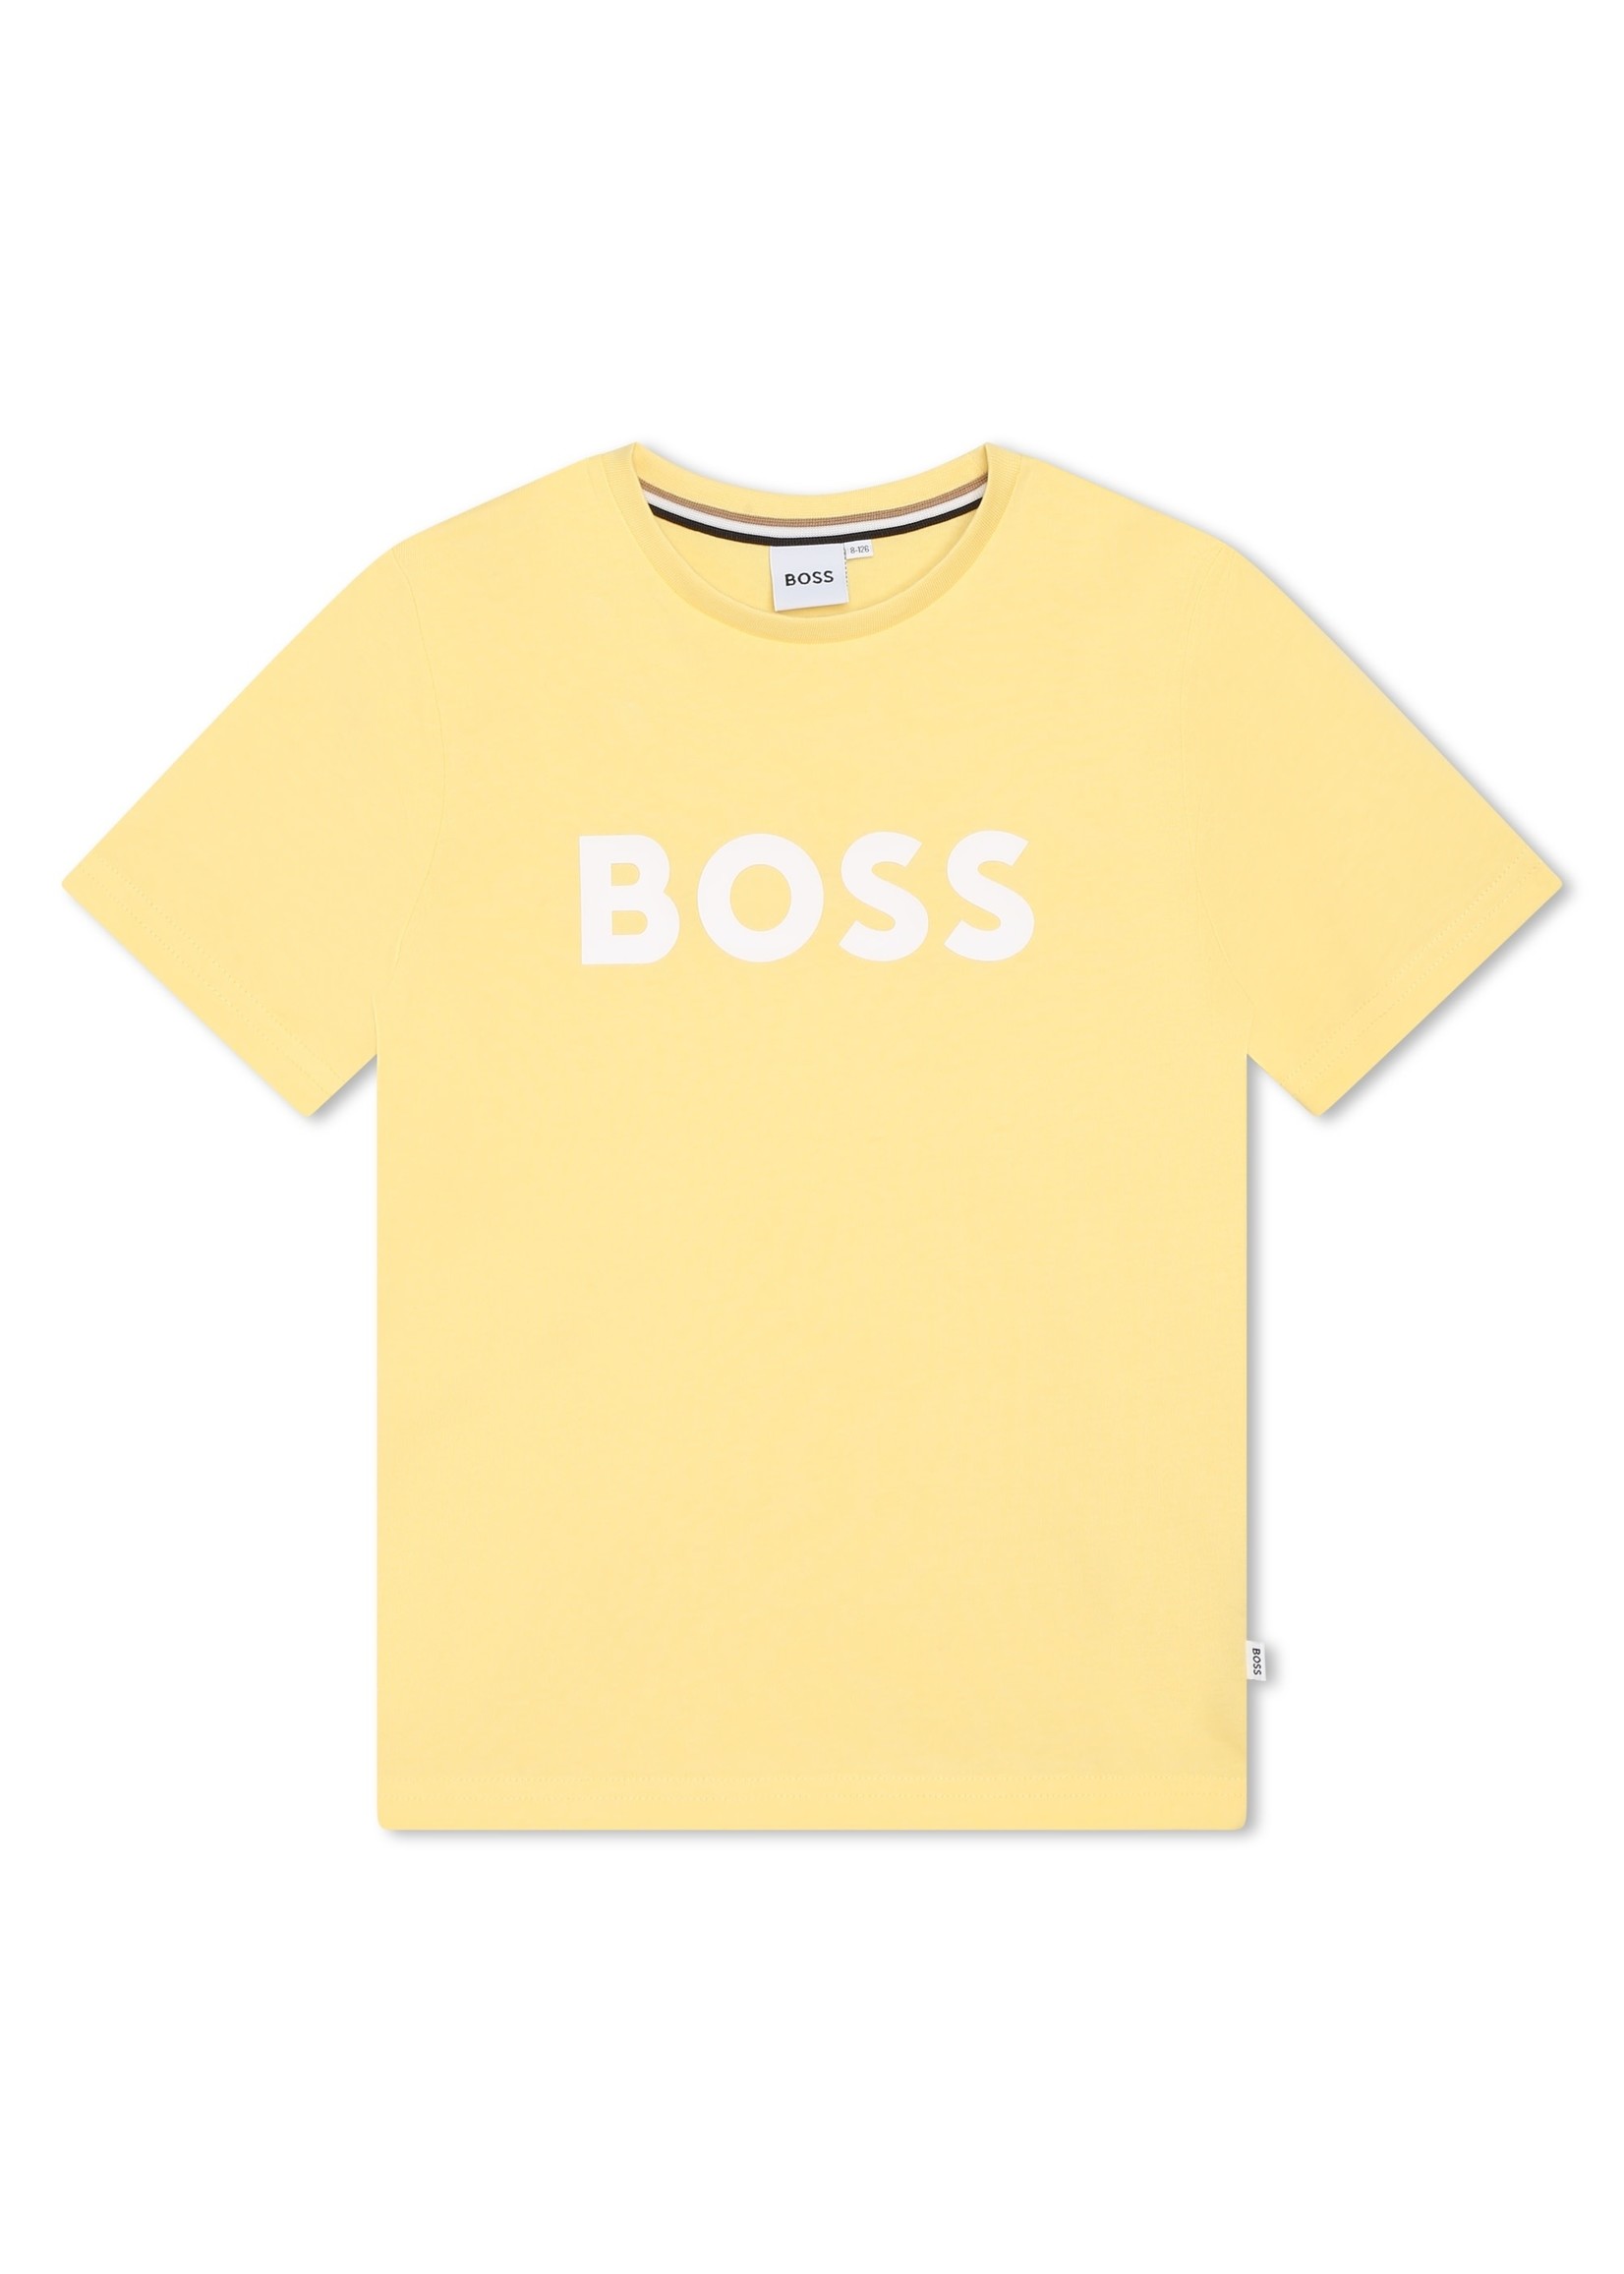 BOSS BOSS t-shirt pastel yellow - J25O04